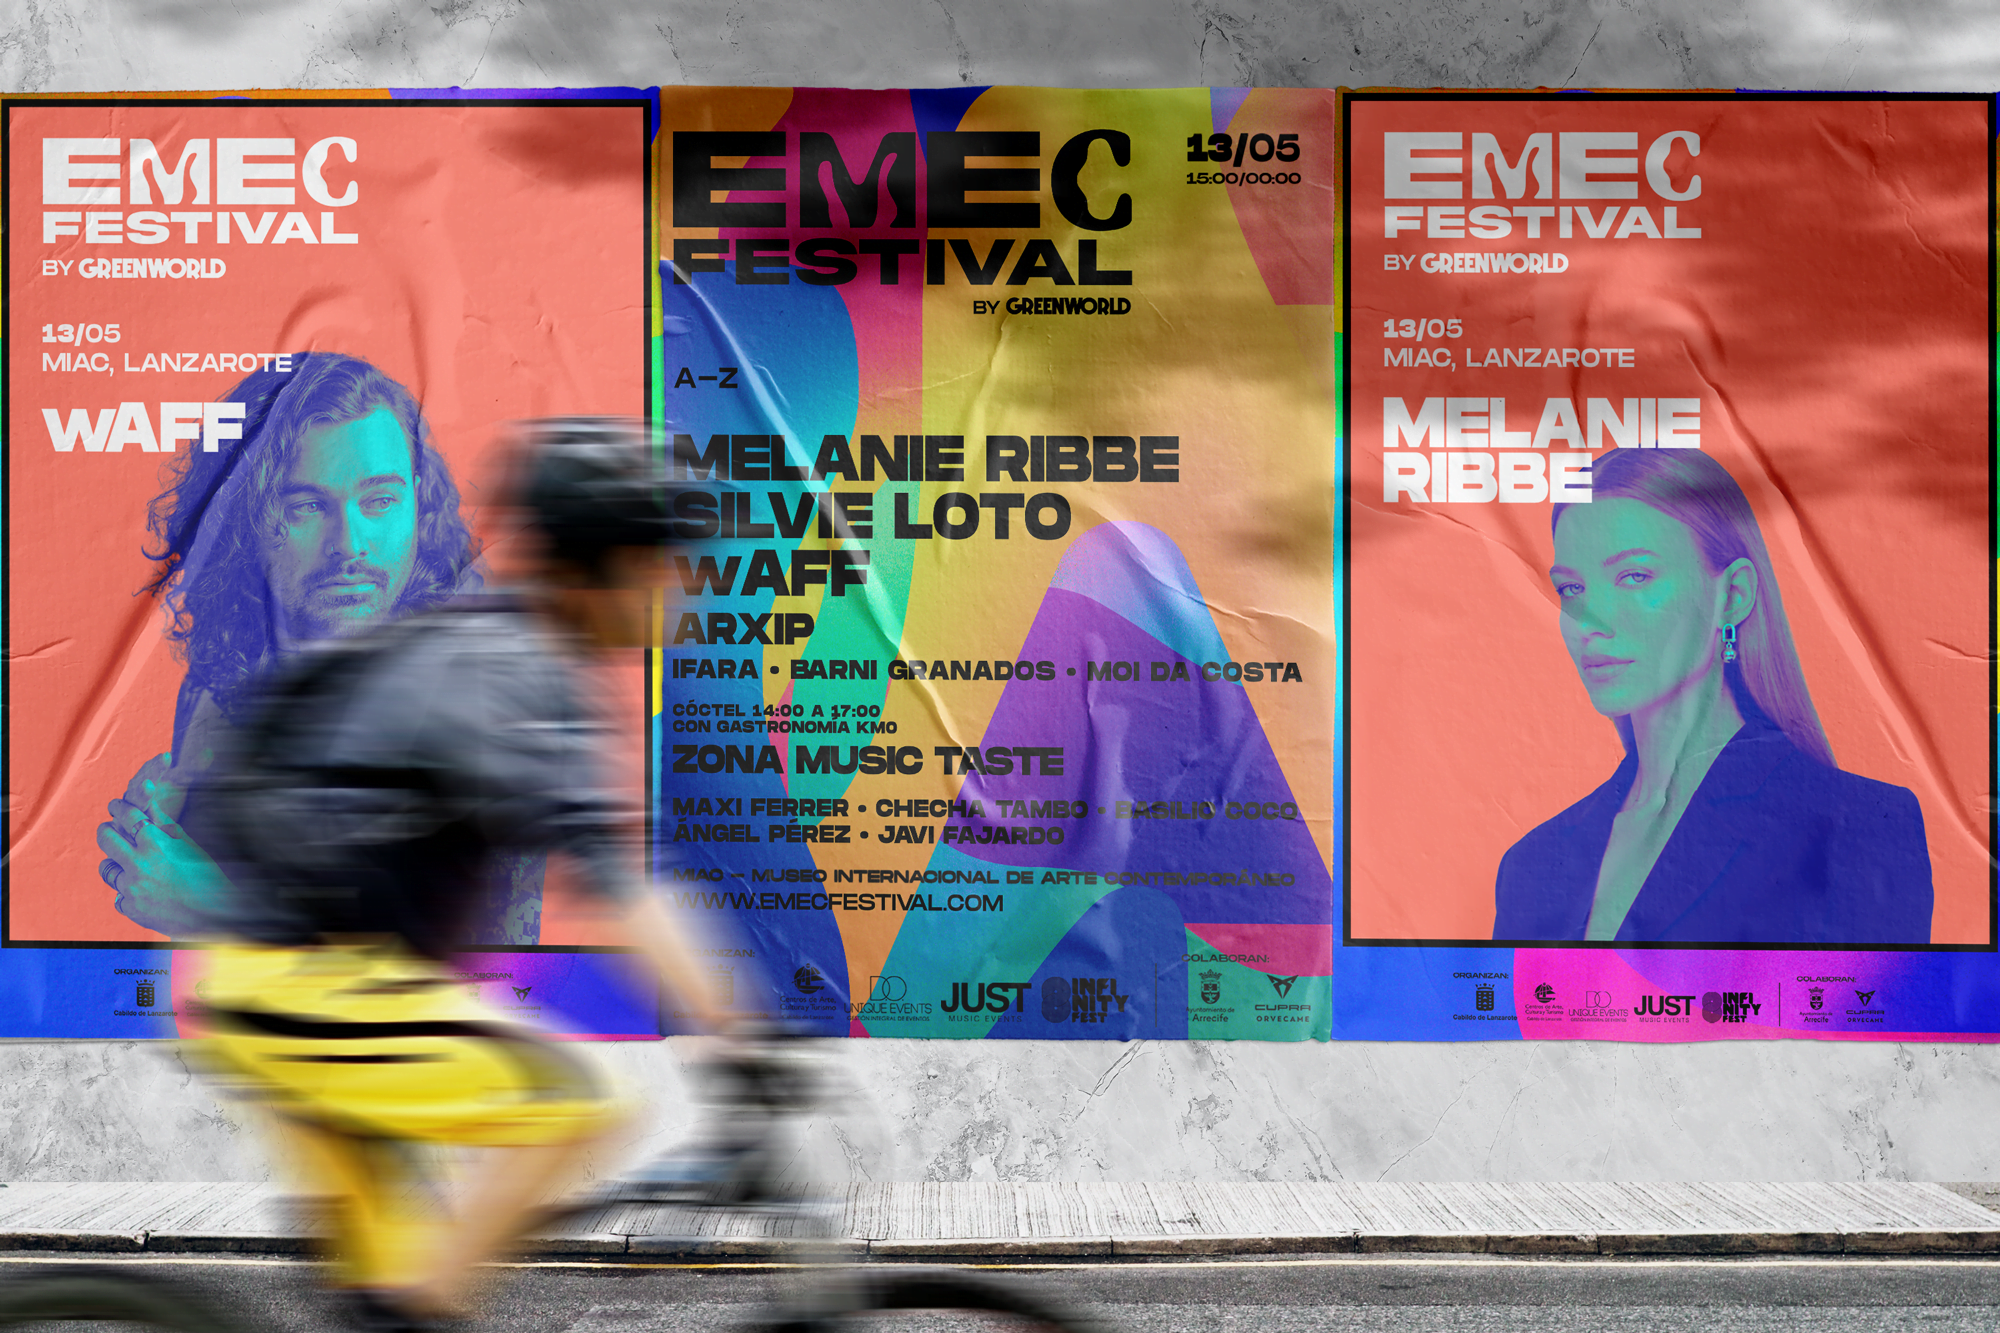 Emec Festival Lanzarote - Why Creative Agency